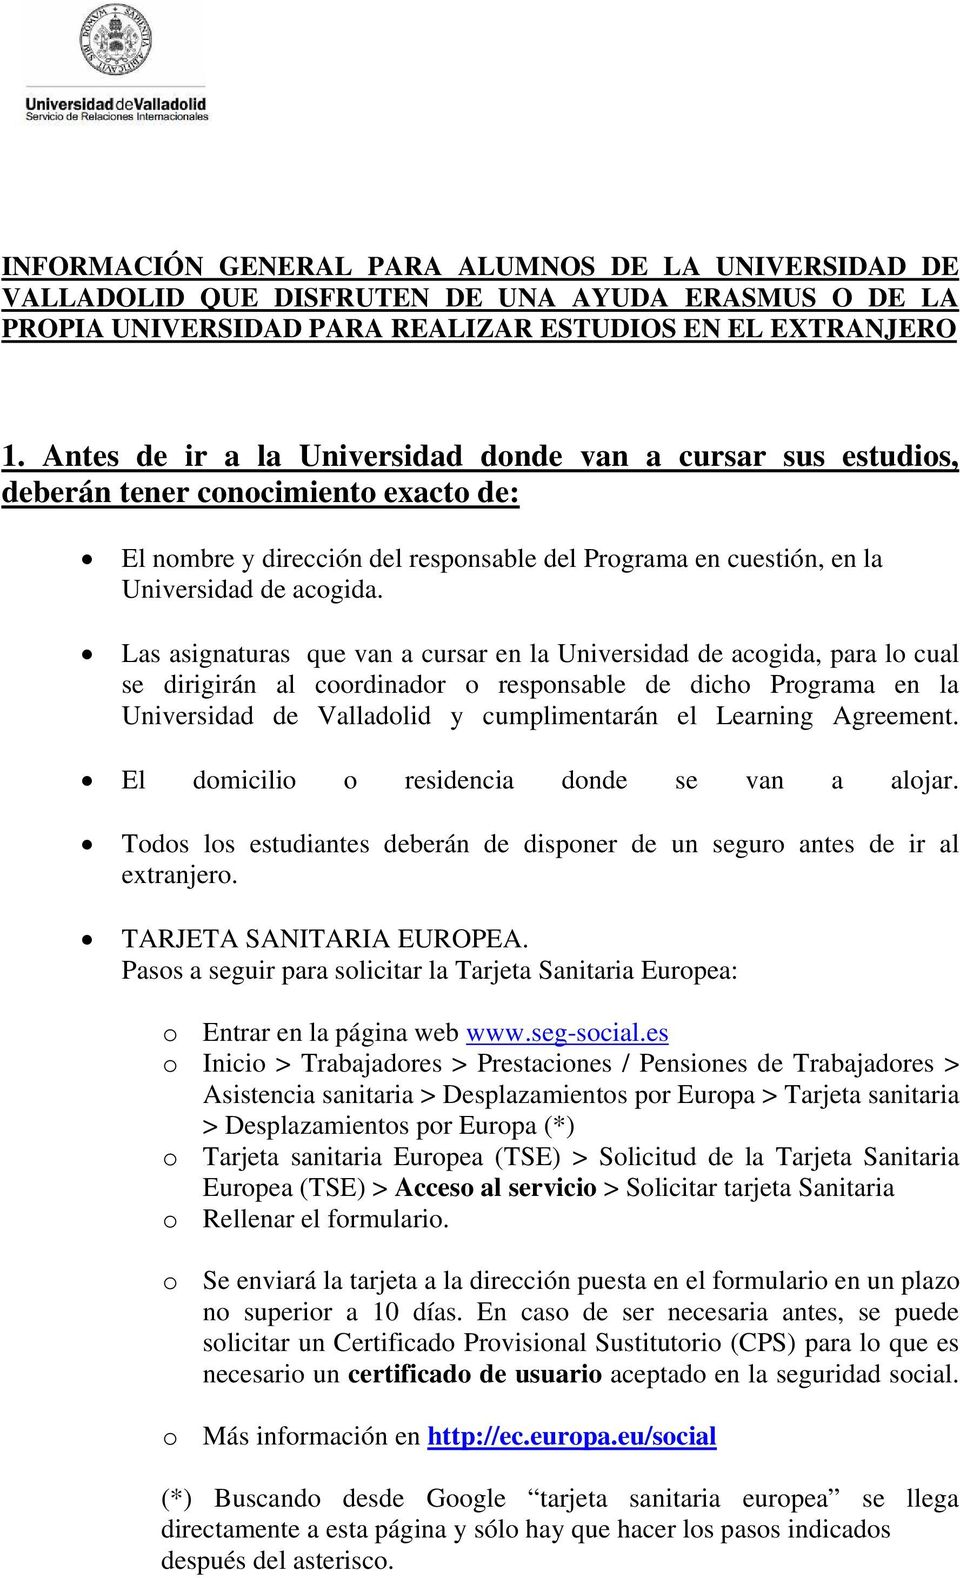 Las asignaturas que van a cursar en la Universidad de acogida, para lo cual se dirigirán al coordinador o responsable de dicho Programa en la Universidad de Valladolid y cumplimentarán el Learning